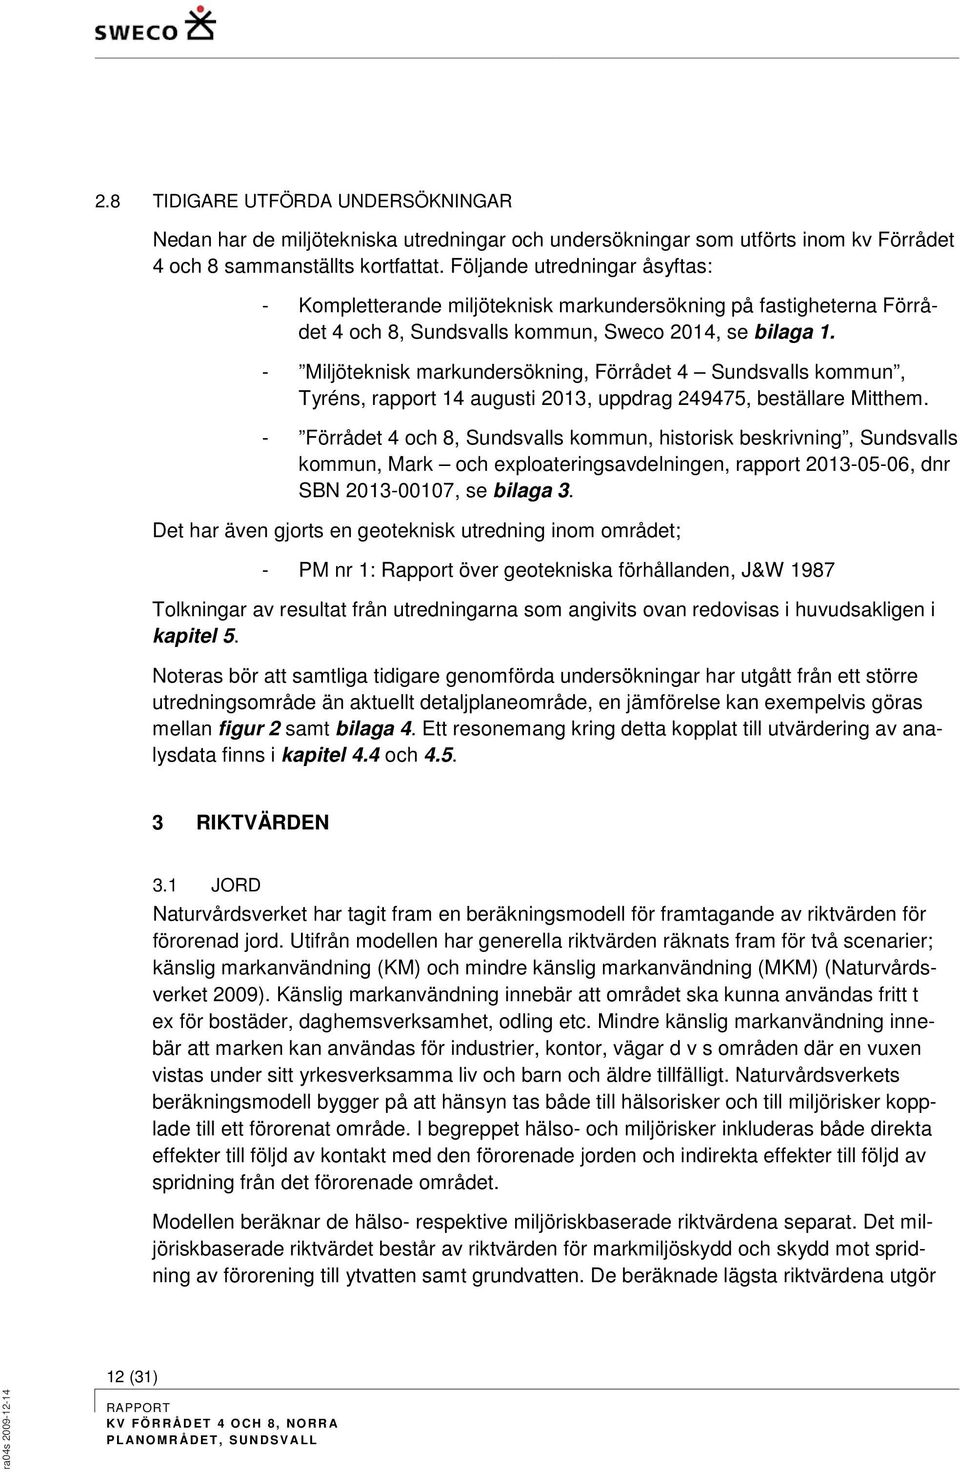 - Miljöteknisk markundersökning, Förrådet 4 Sundsvalls kommun, Tyréns, rapport 14 augusti 2013, uppdrag 249475, beställare Mitthem.